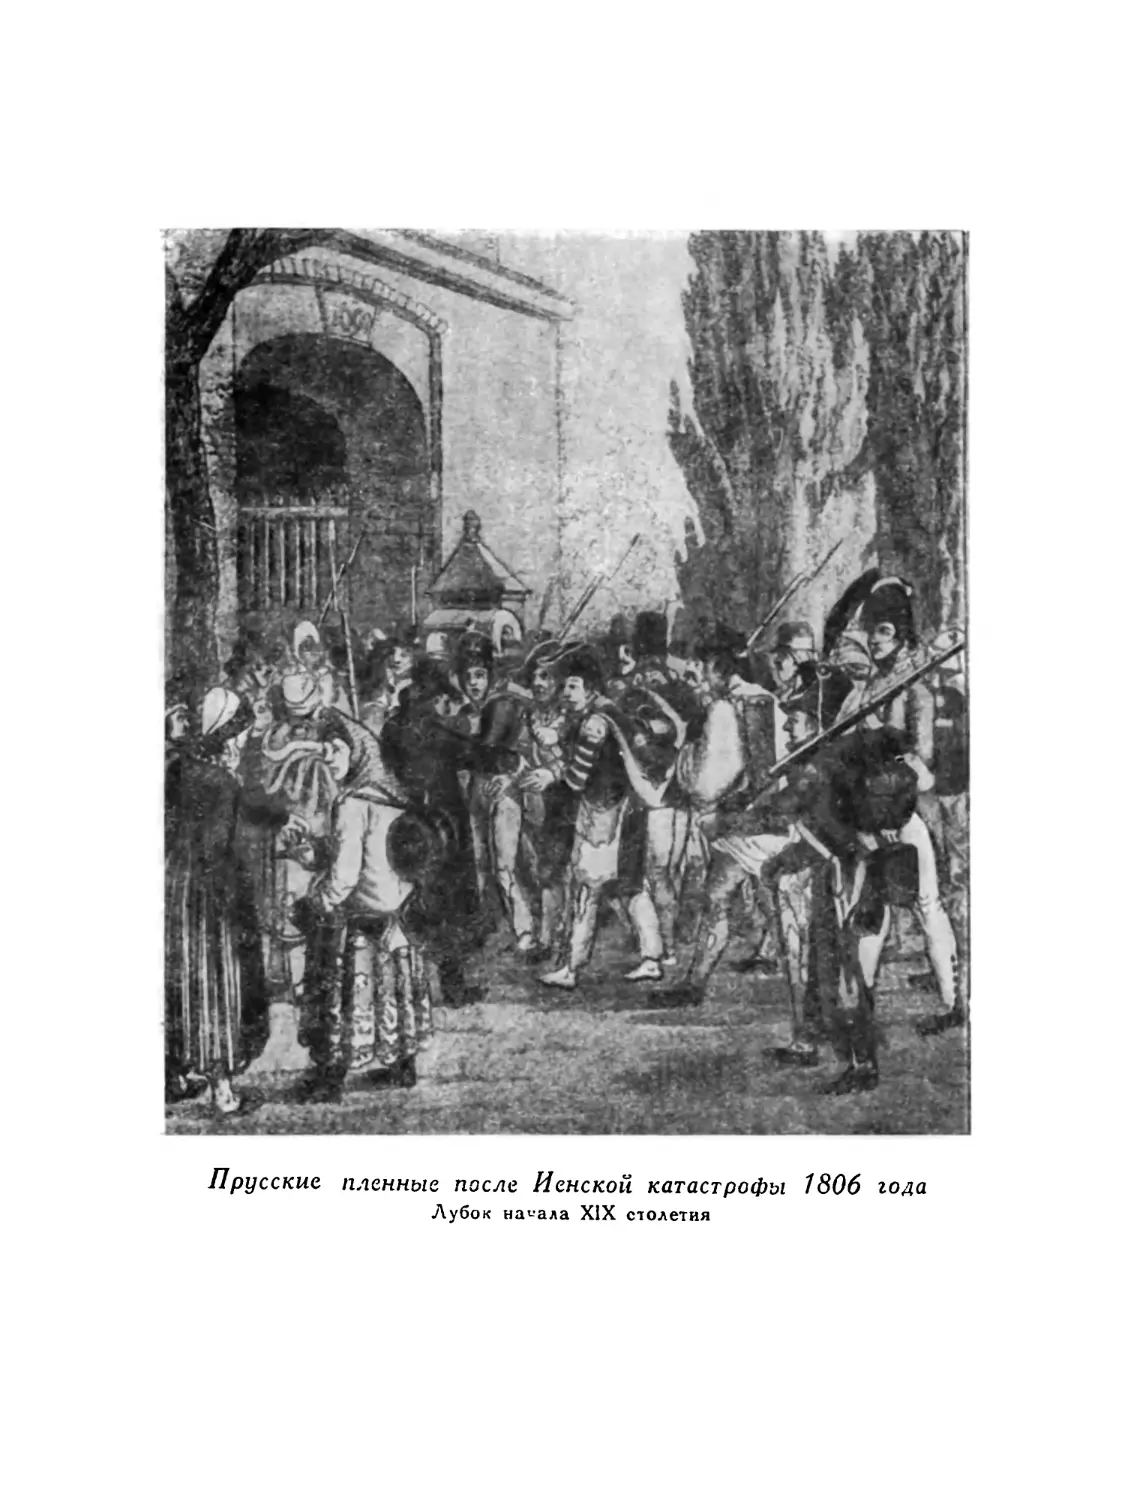 Вклейка. Прусские пленные после Иенской катастрофы 1806 года